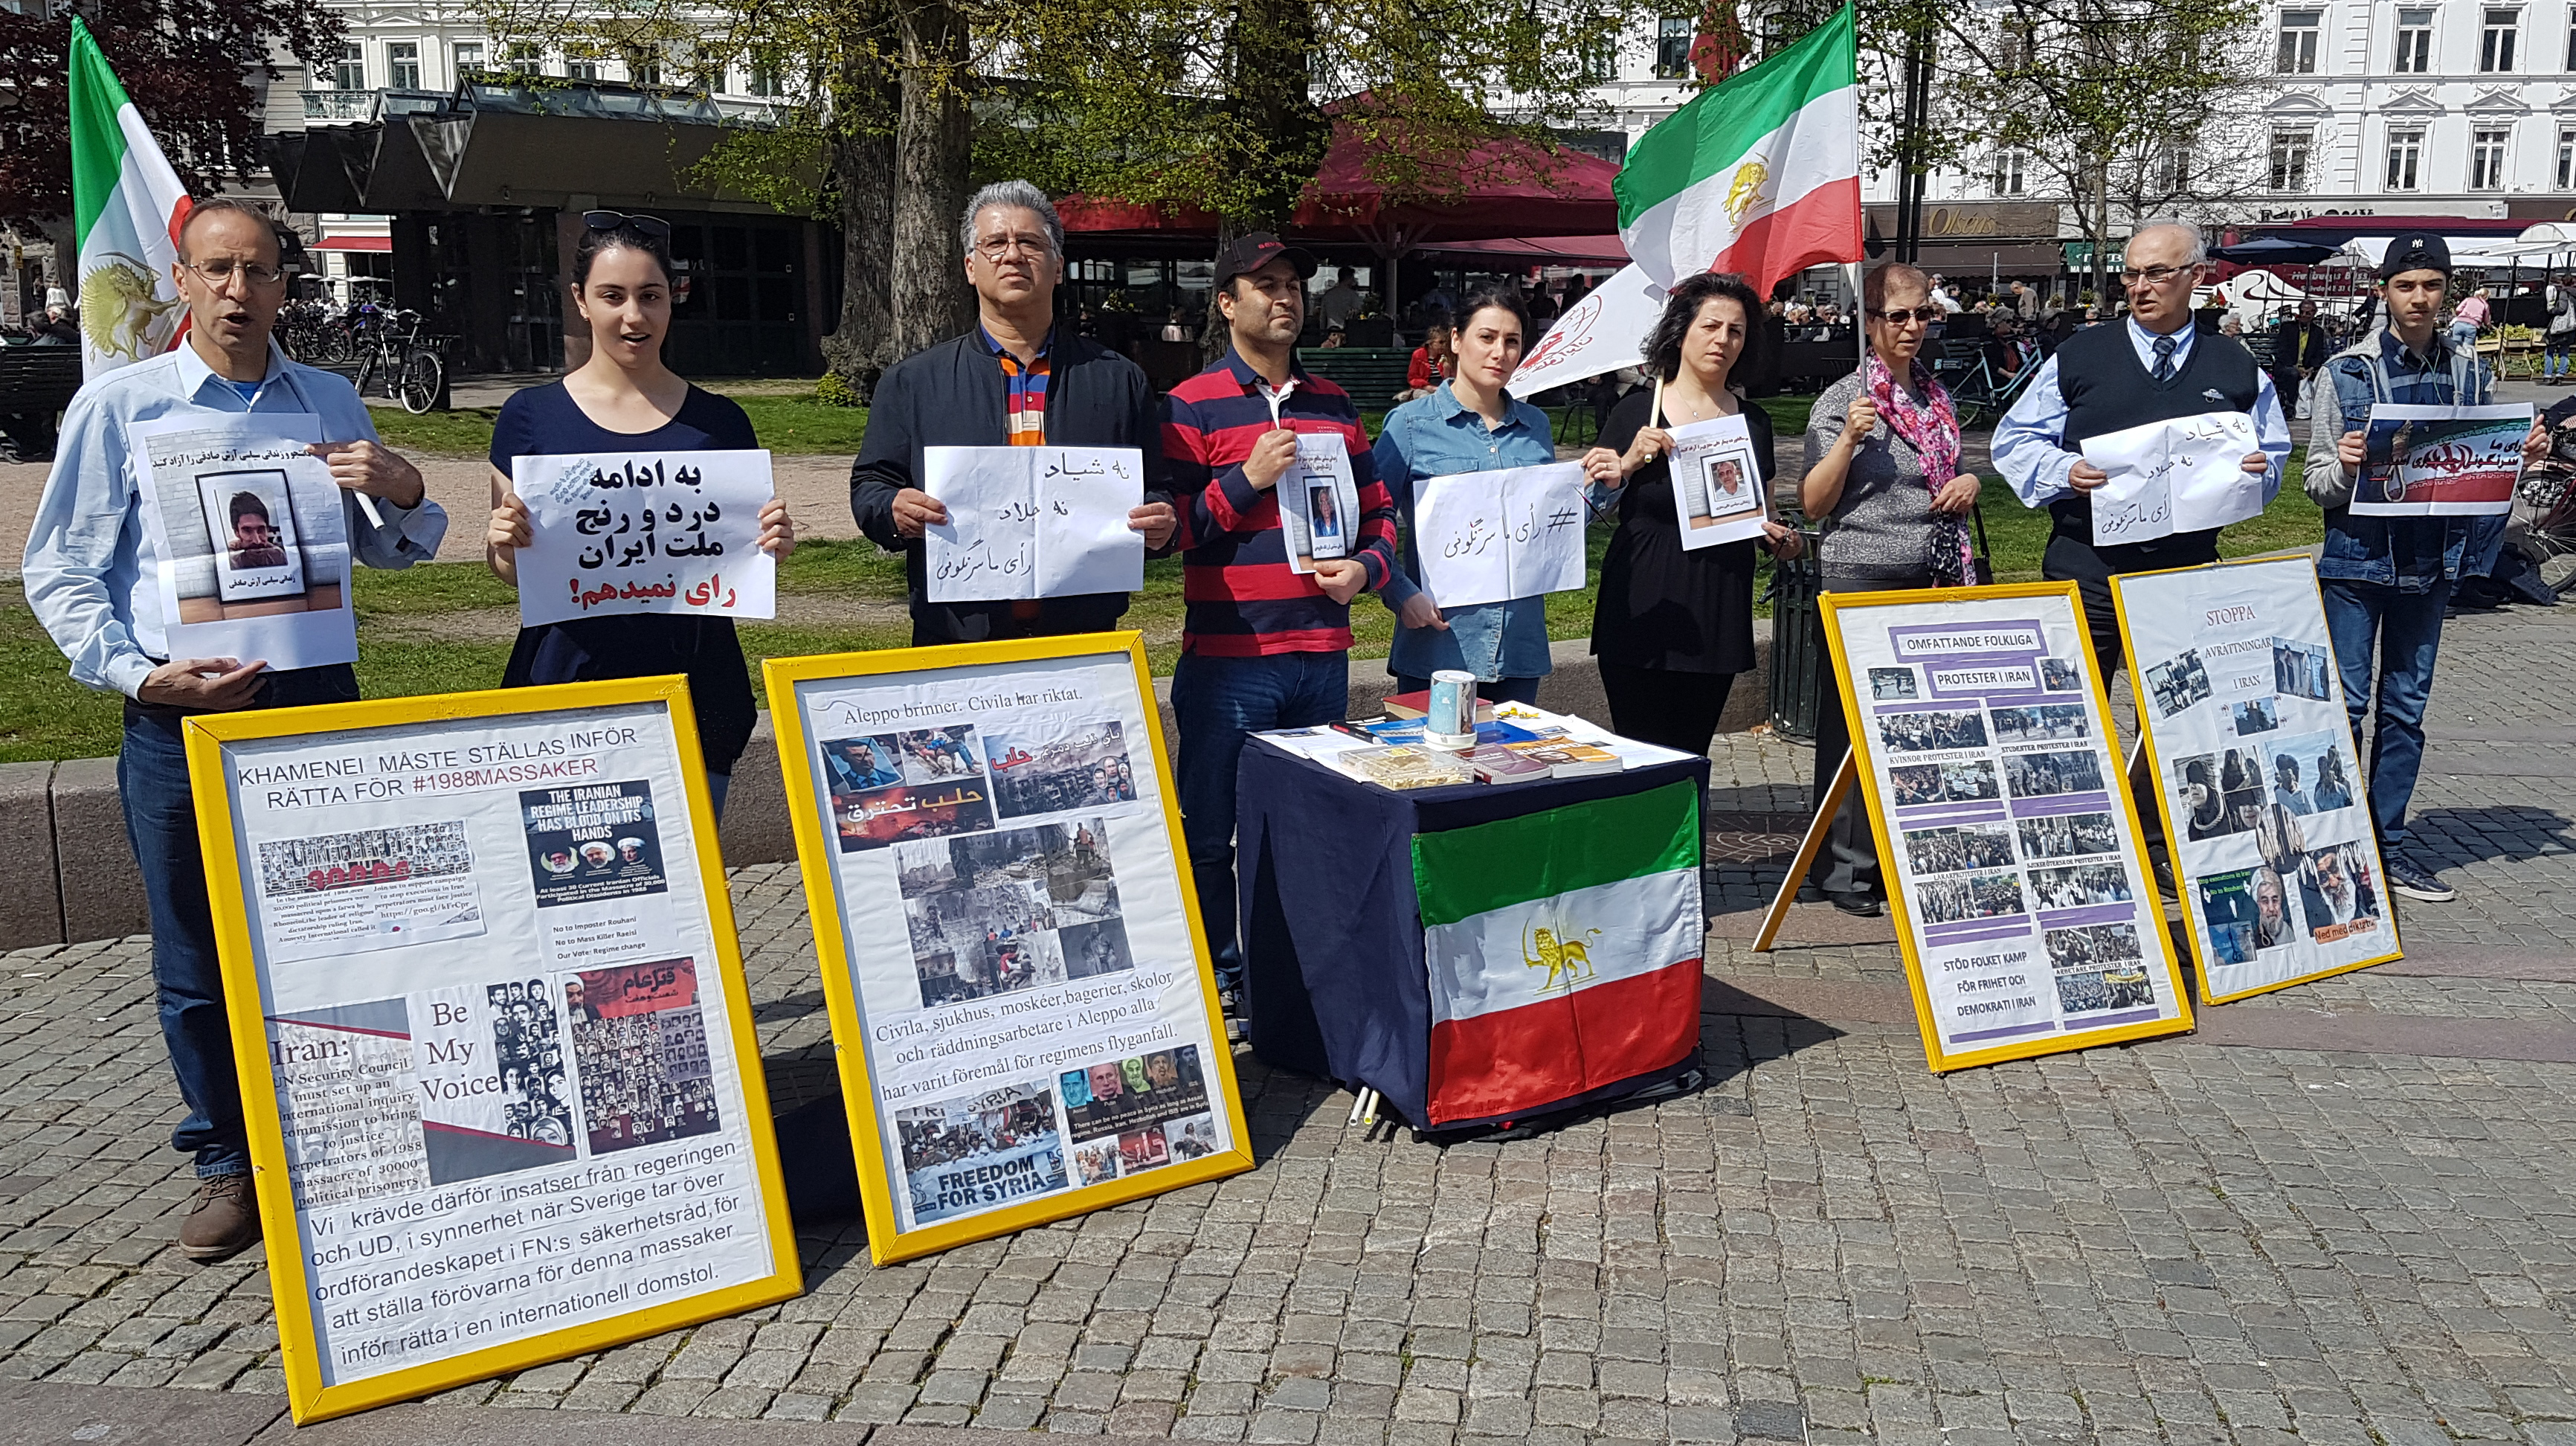 تحریم نمایش انتخابات قلابی آخوندی توسط حامیان مقاومت در مالمو